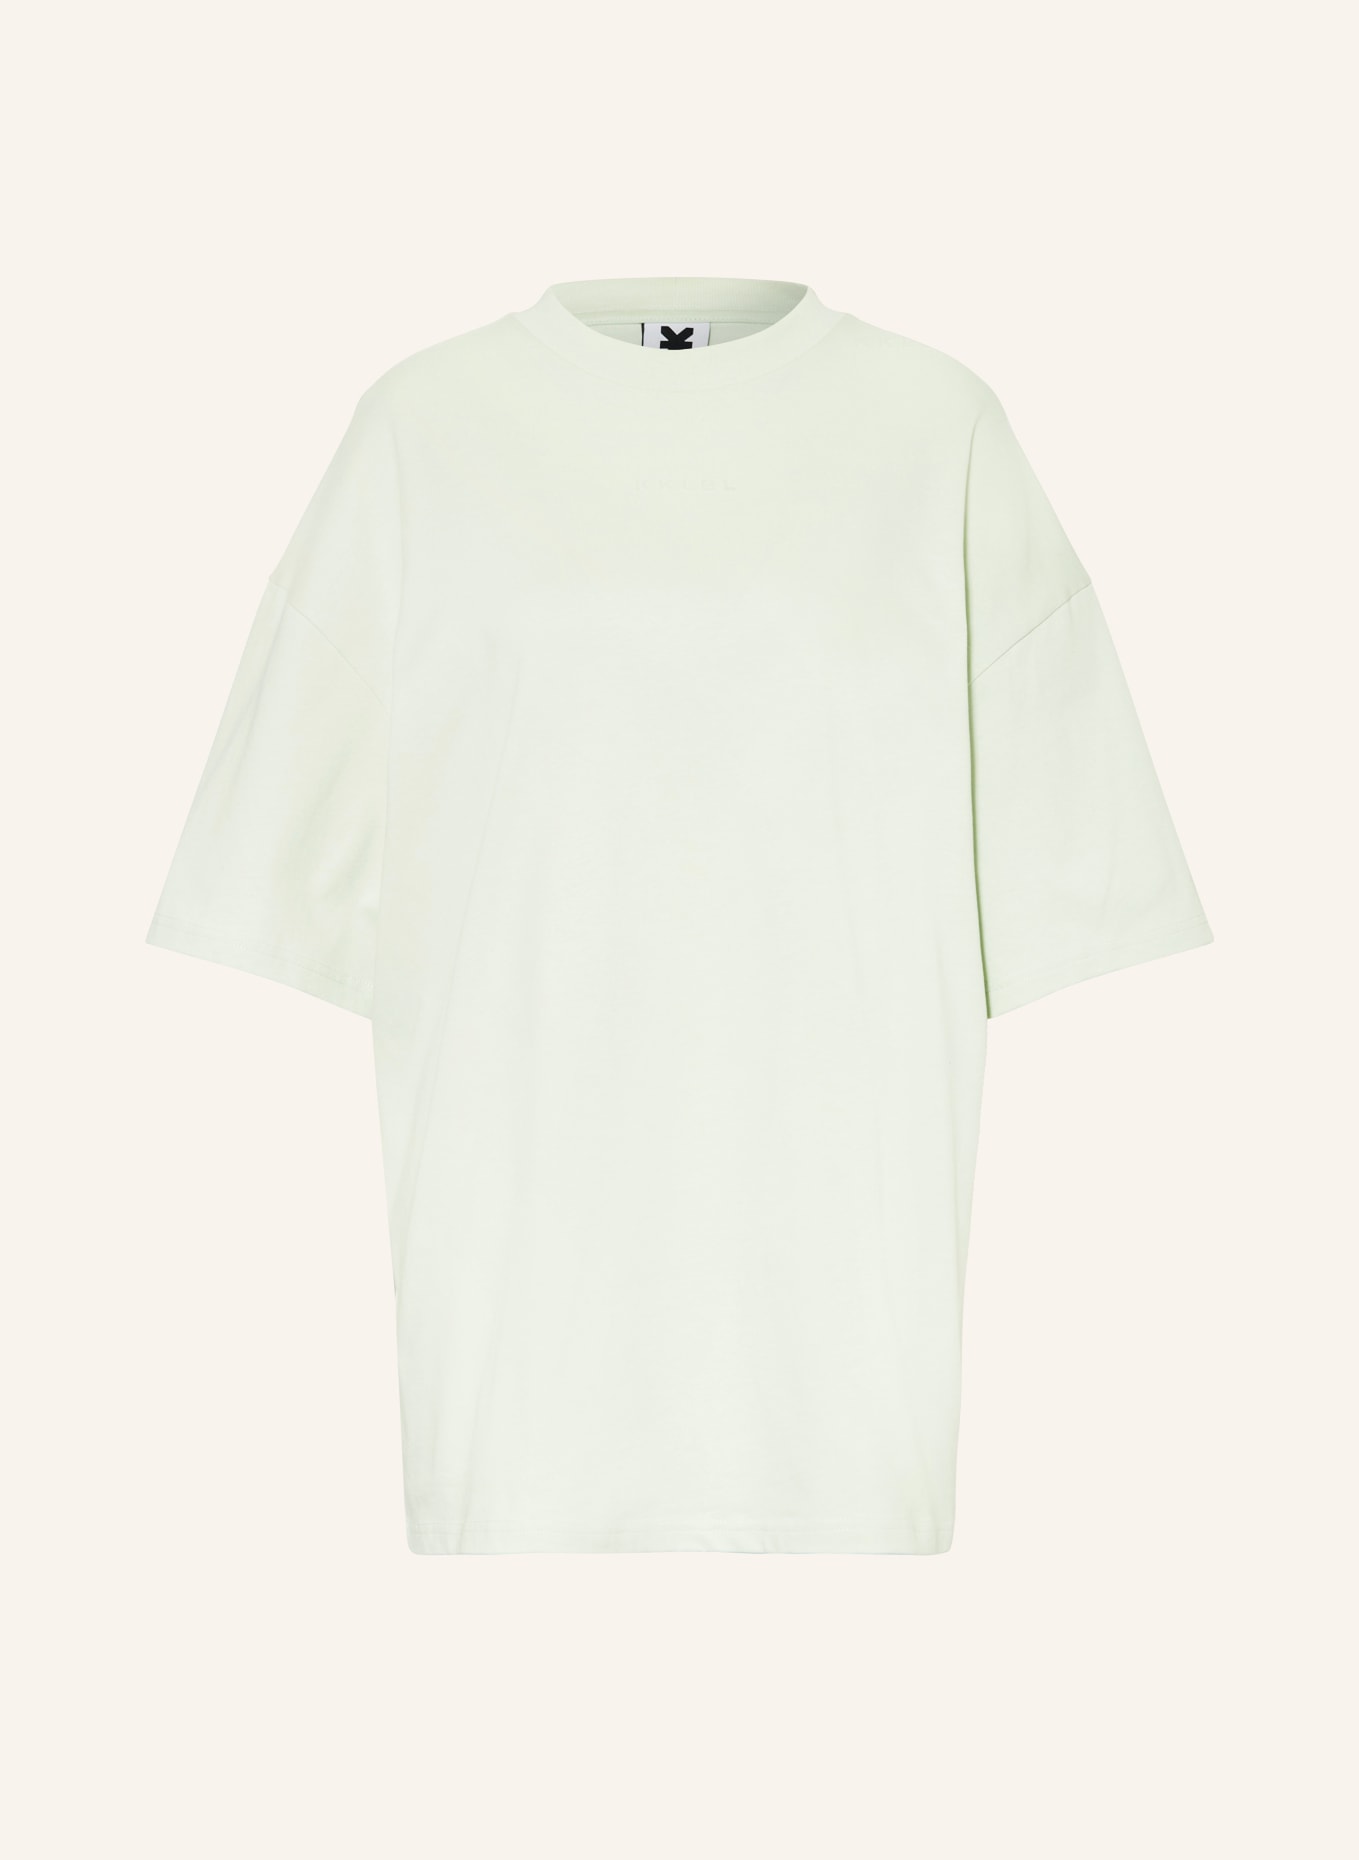 KARO KAUER Oversized shirt, Color: MINT (Image 1)